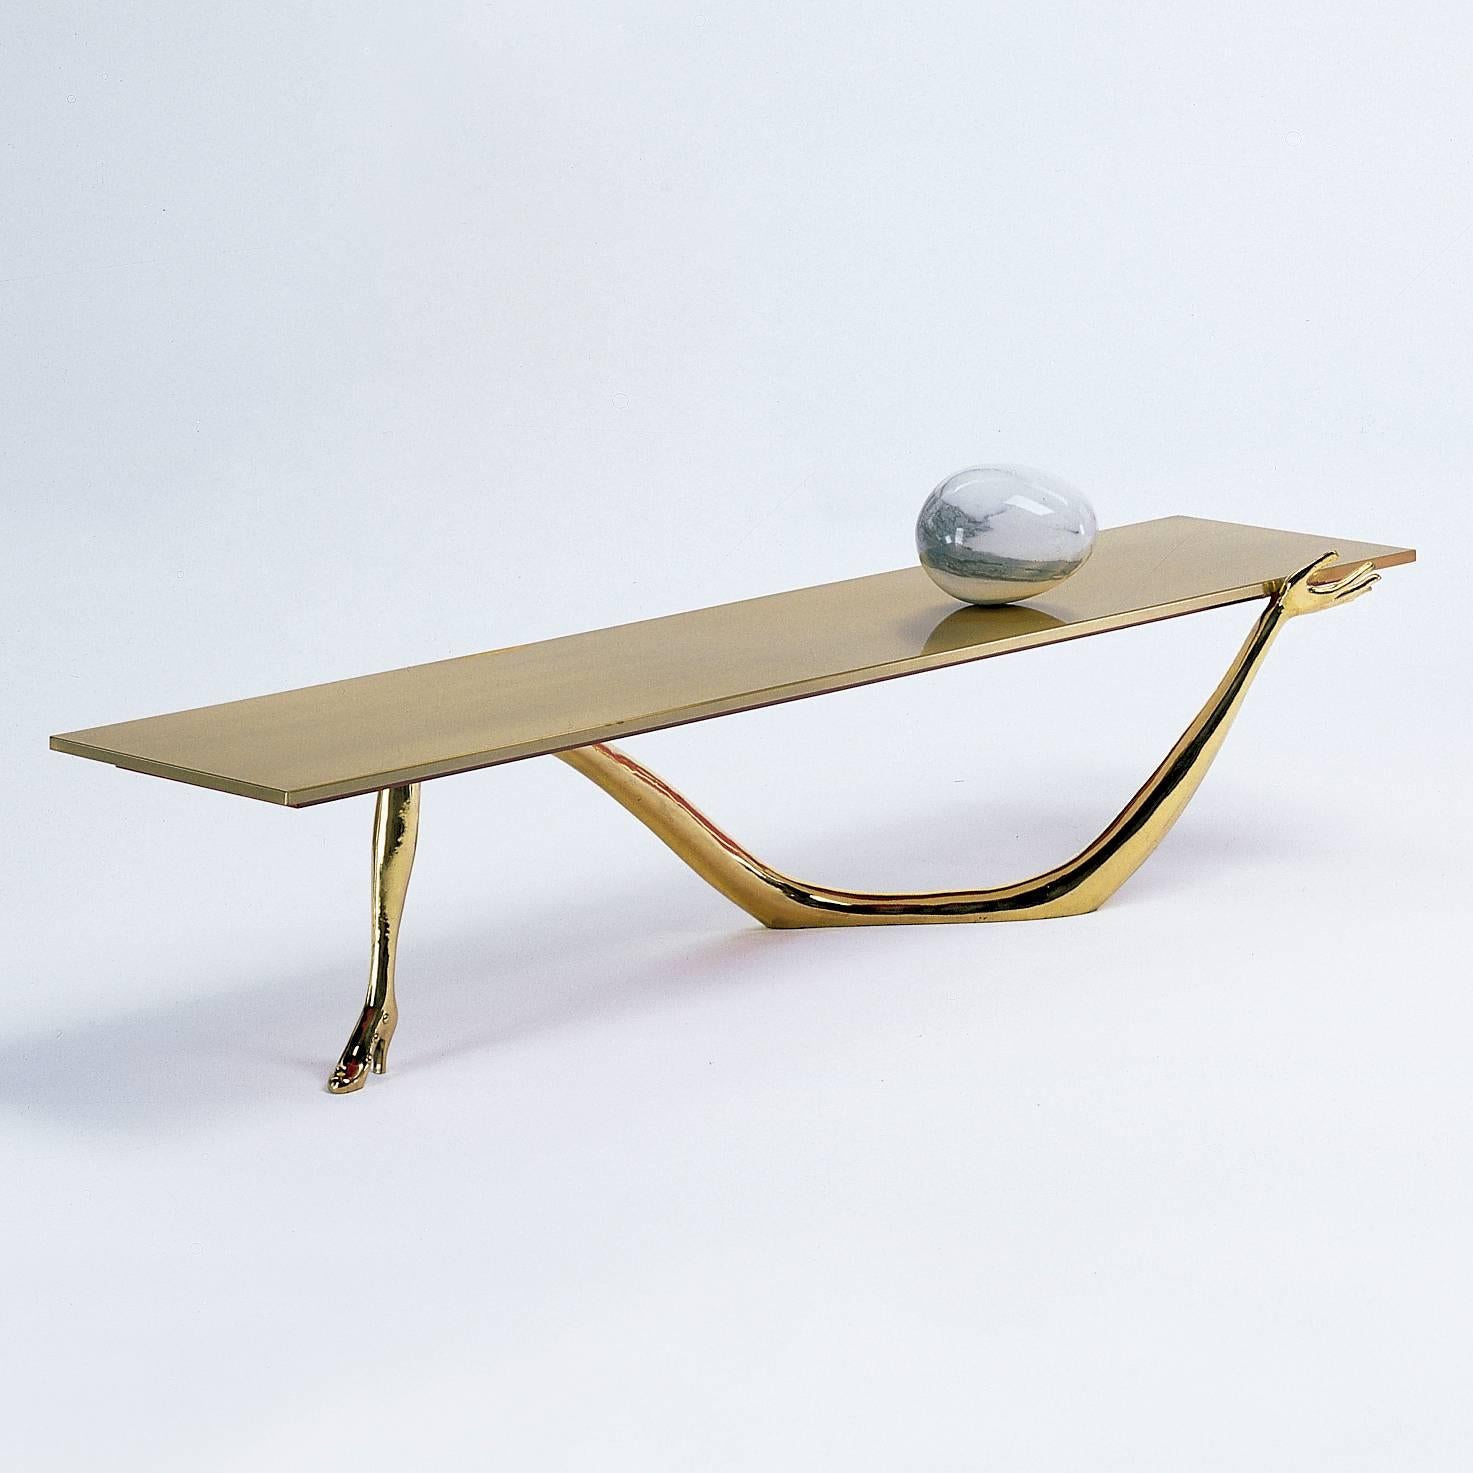 Leda niedriger Tisch, entworfen von Dali, hergestellt von BD.

Die Beine sind in einem Gusslack Messing.
Tischplatte aus gebürstetem und lackiertem Messing.
Ei aus Carrara-Marmor obenauf.

Maße: 51 x 190 x 61 H.cm

In den dreißiger Jahren umgab sich